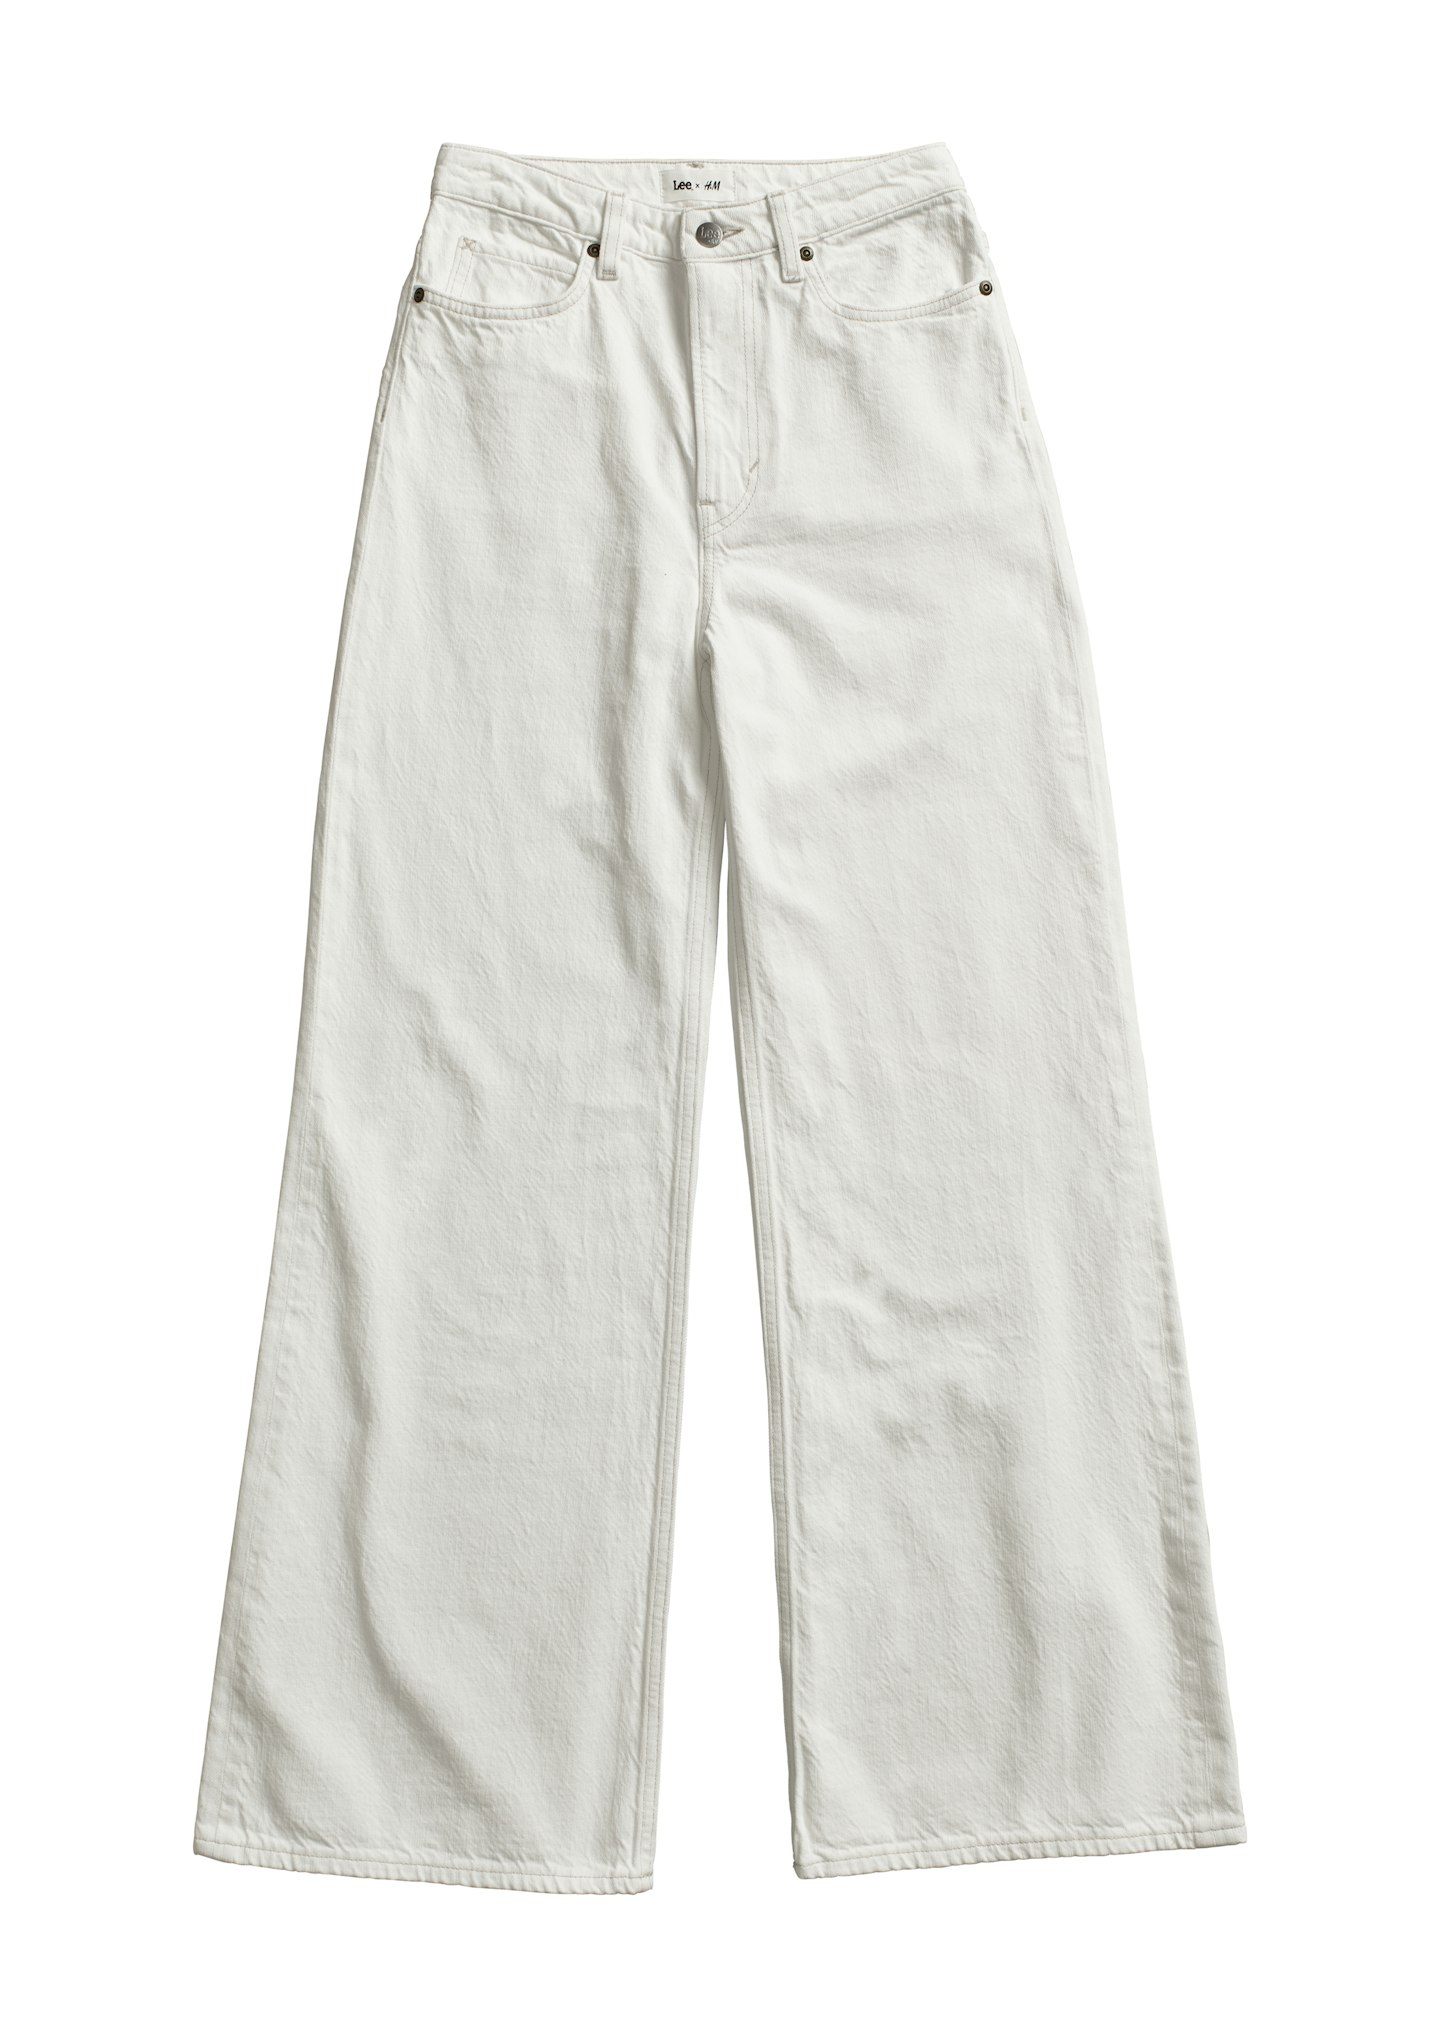 Lee X H&M, Wide Ultra High-Waist Jeans, £34.99